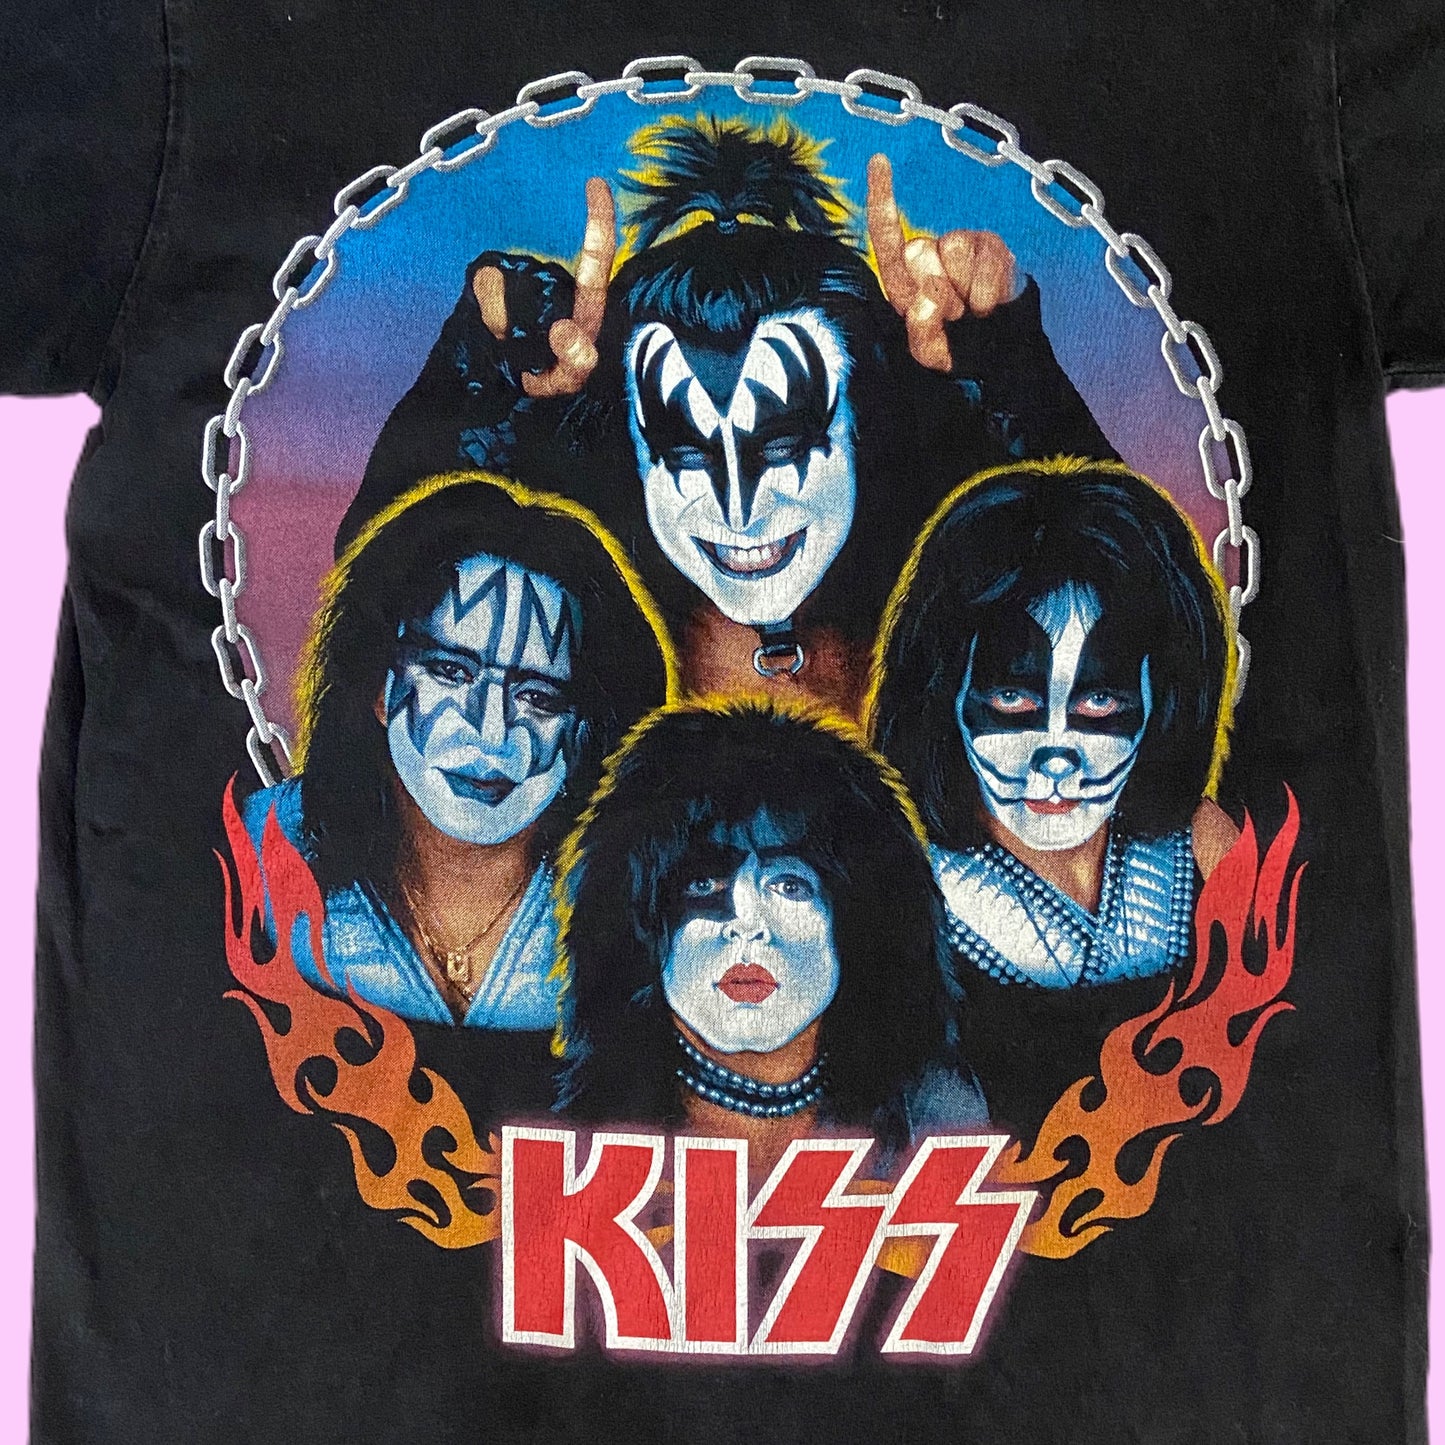 Vintage Kiss World Domination Tour T-Shirt - S